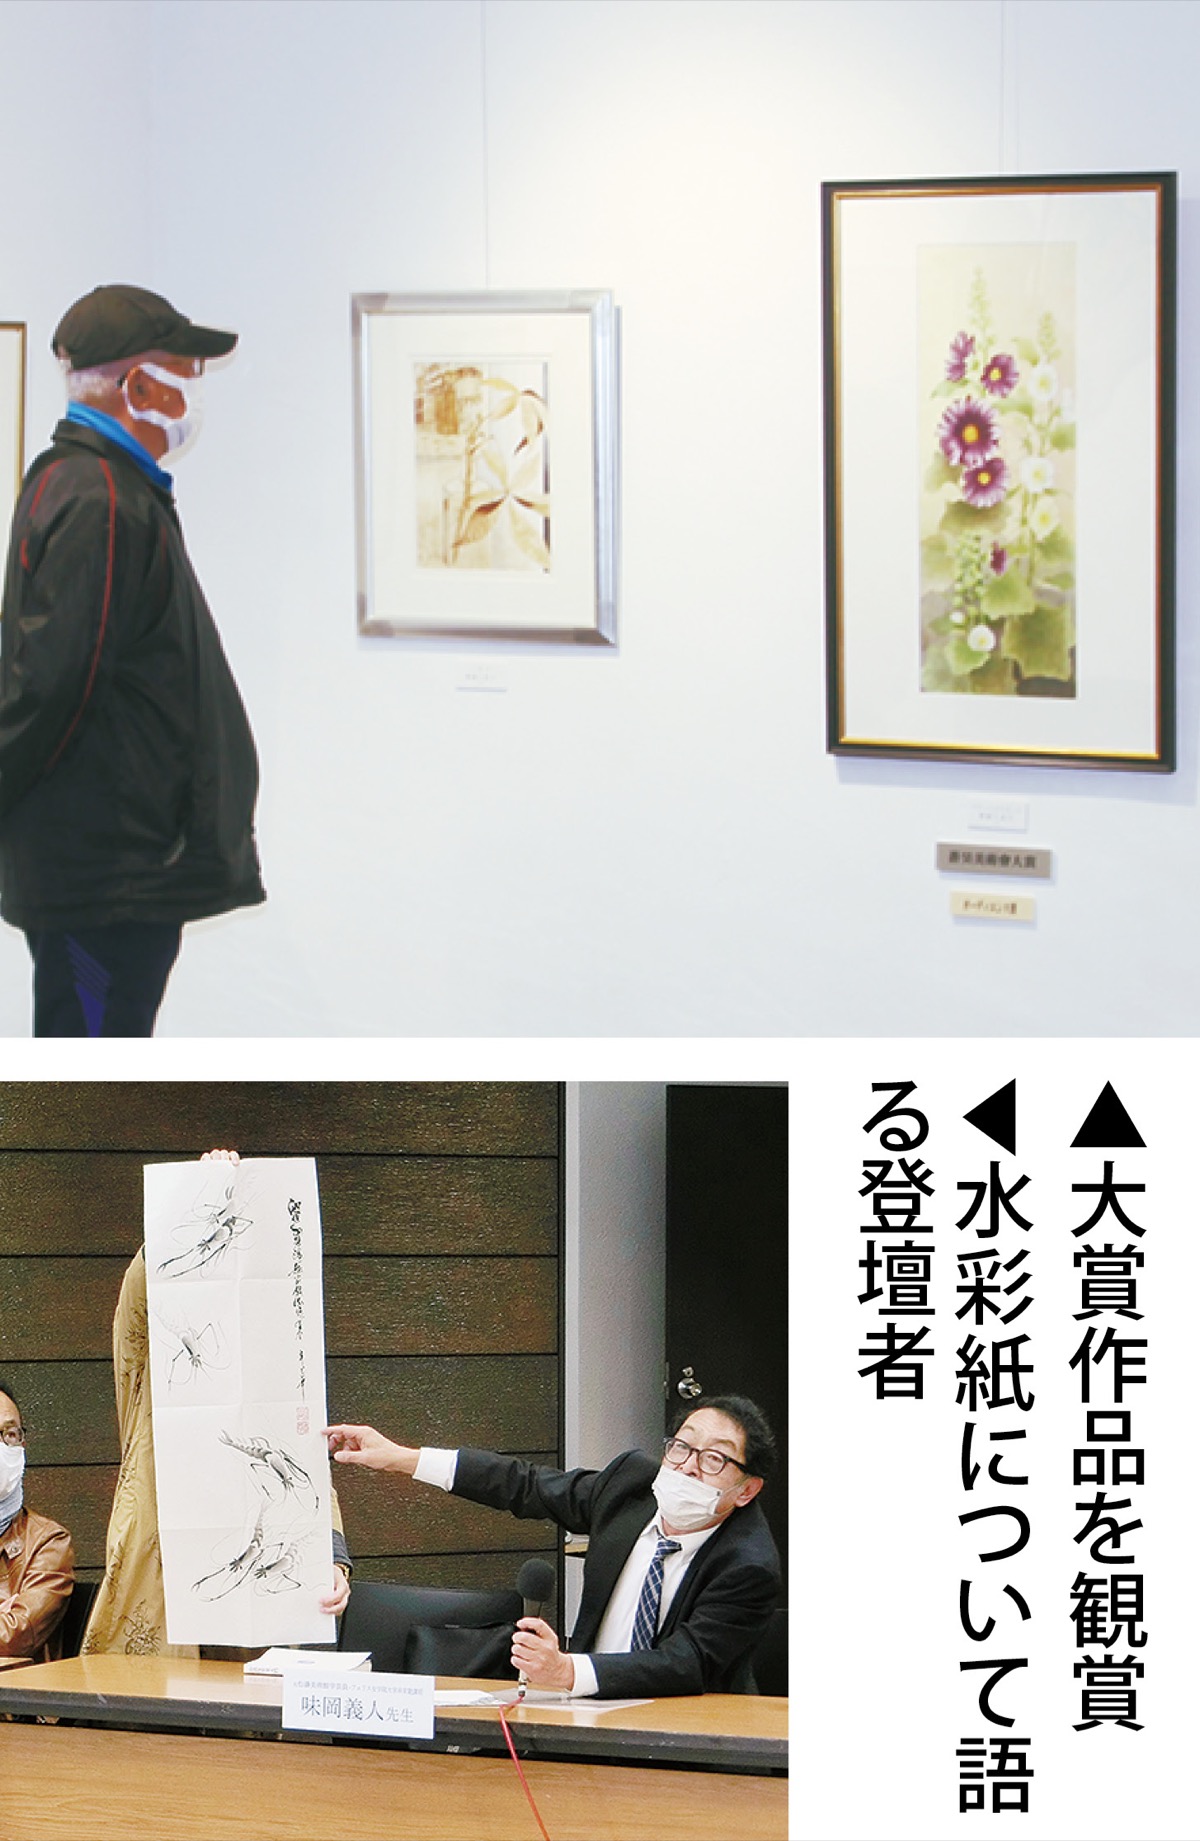 横浜で水彩の魅力深める 公募展、41作品が入選 | 中区・西区 | タウン